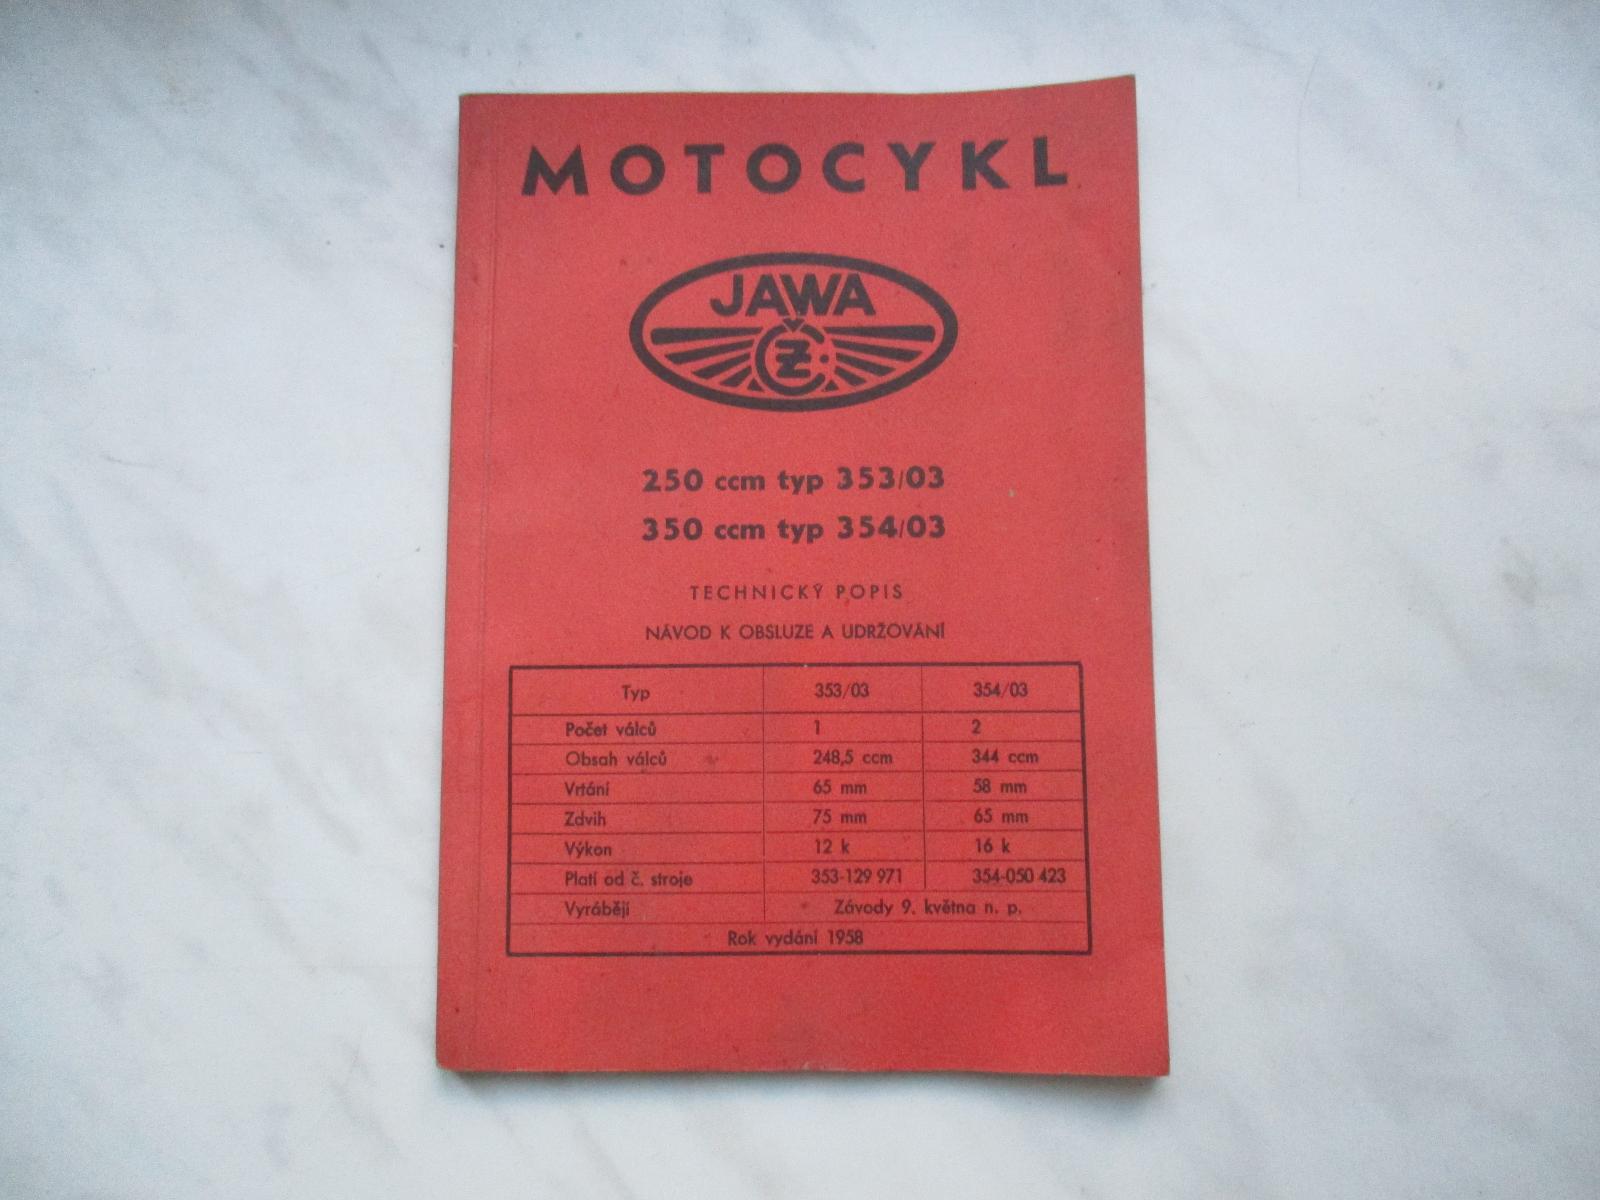 Motocykle Jawa. - Motoristická literatúra